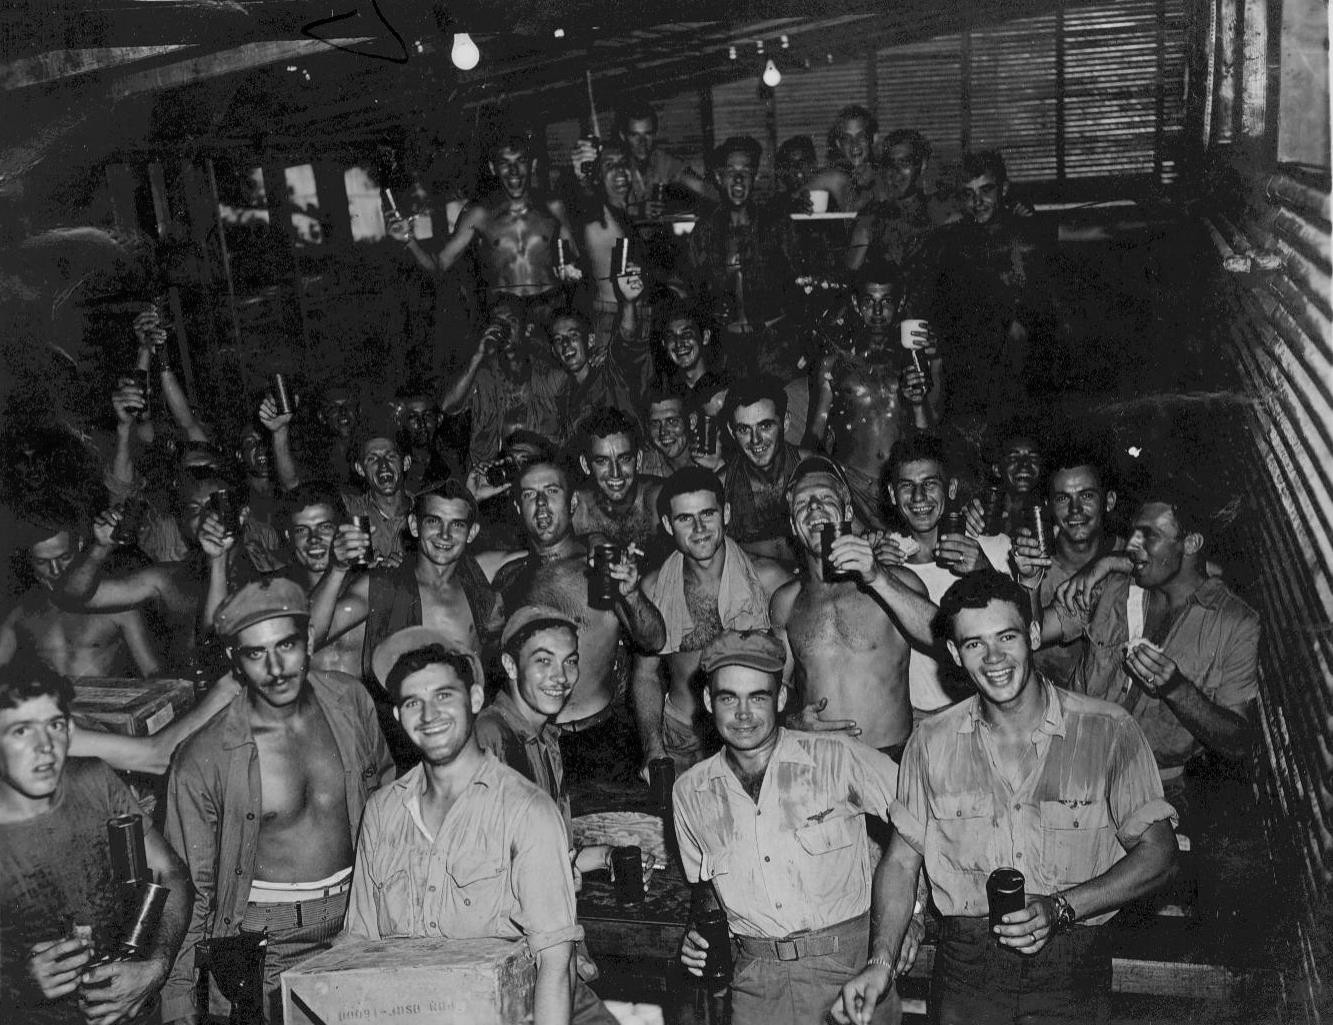 US Marines celebrating, Okinawa, Japan, Aug 1945